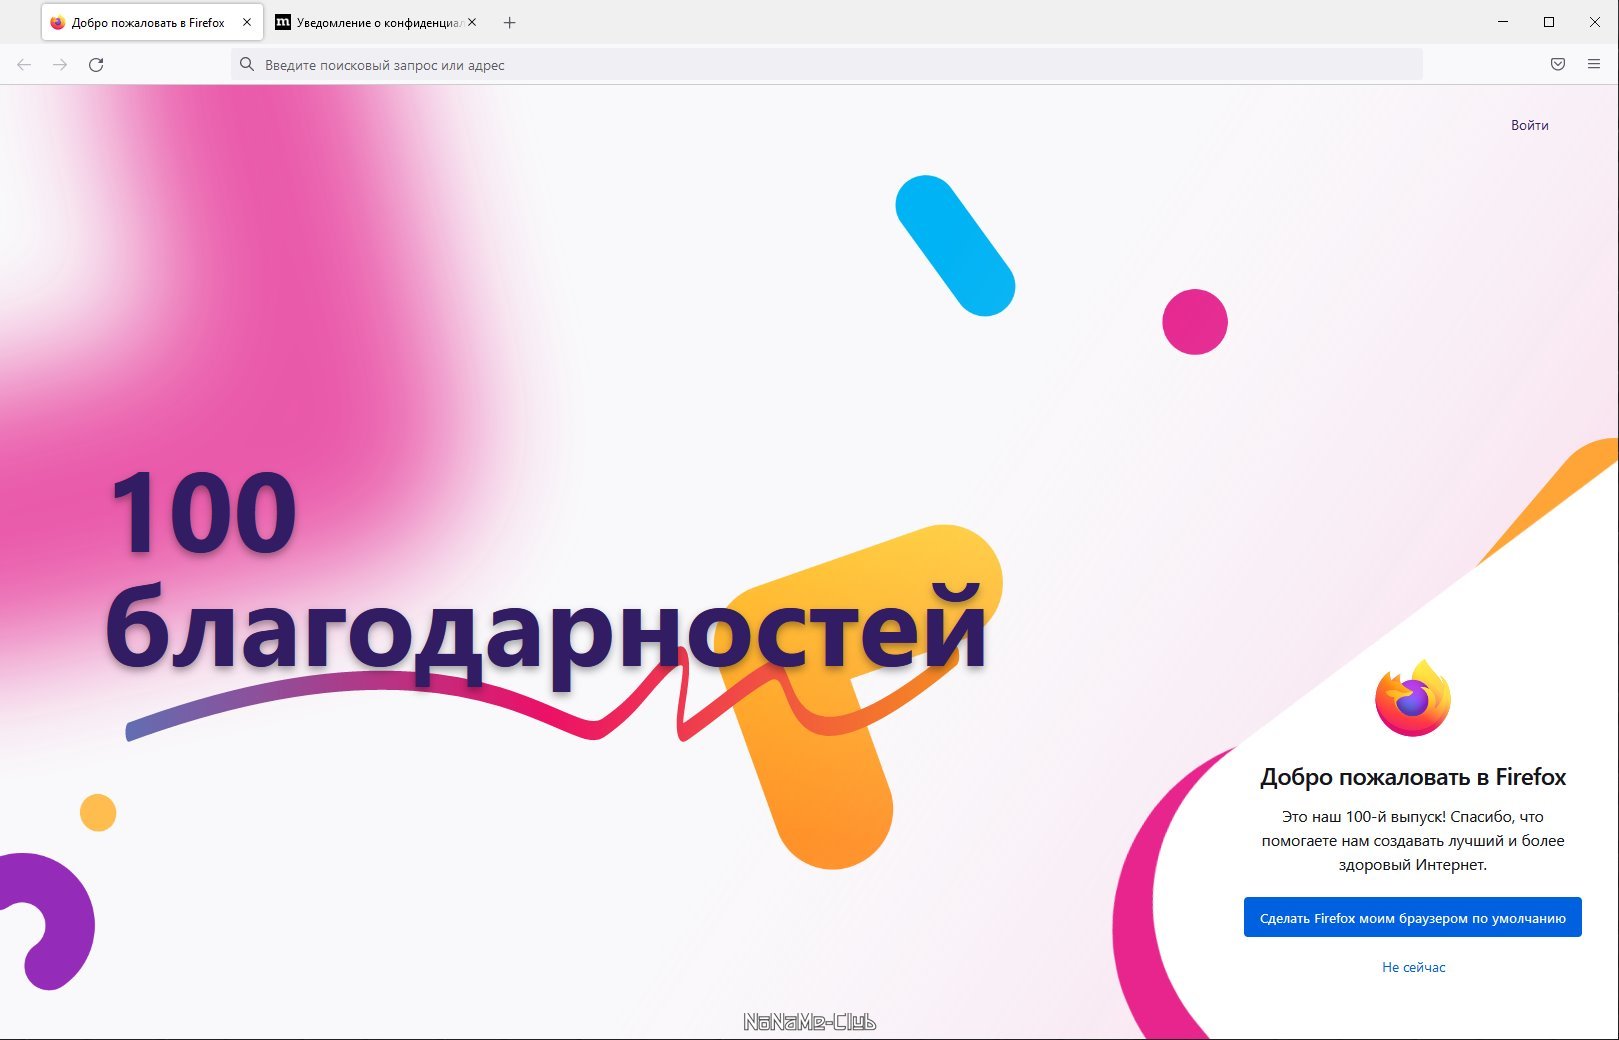 Firefox Browser 100.0.1 [Ru]